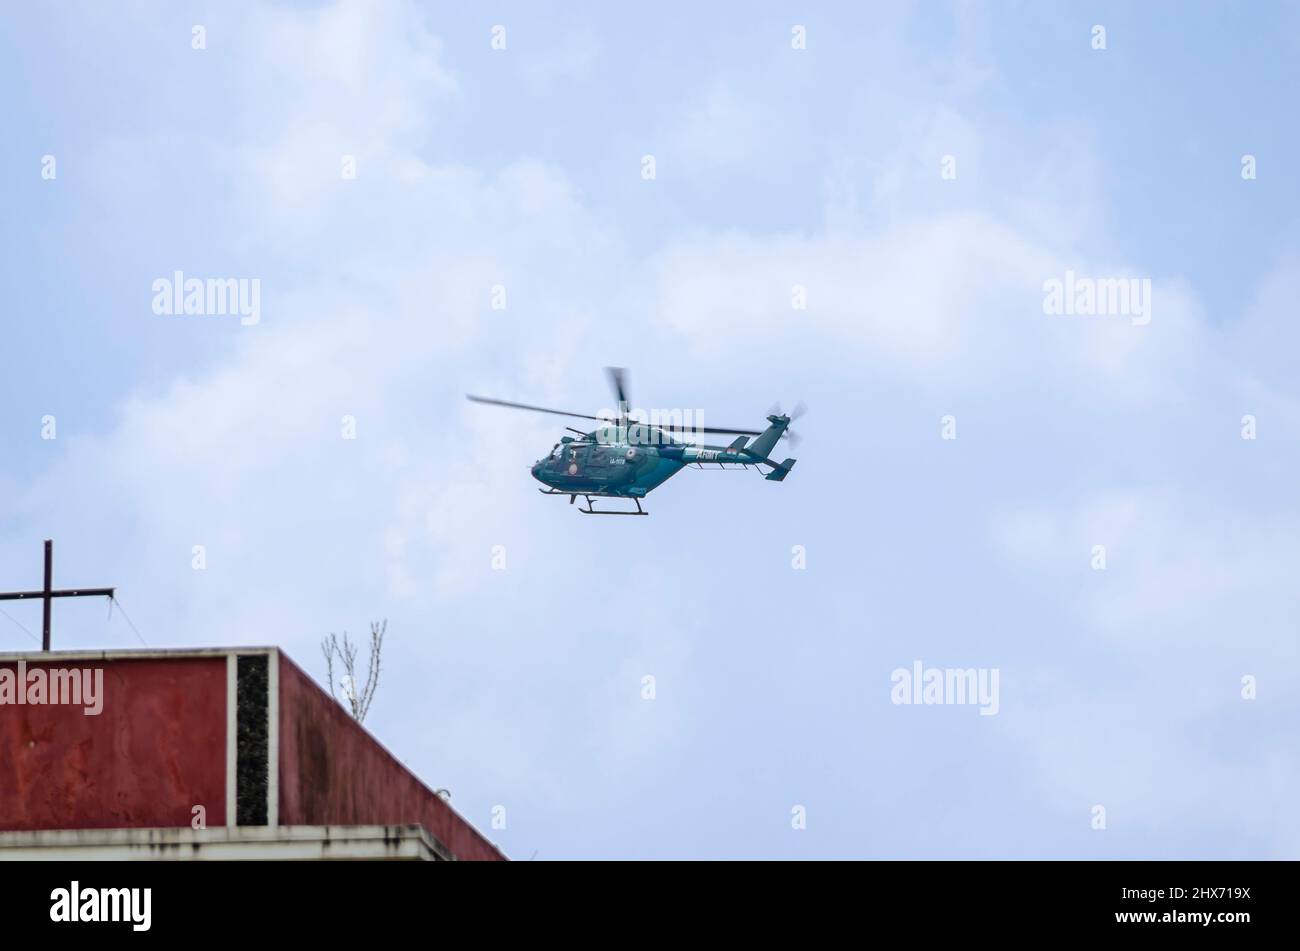 Un helicóptero Dhruv ligero avanzado del ejército indio de bajo vuelo. El helicóptero y su piloto son parte del Cuerpo de Aviación del Ejército Indio. Foto de stock